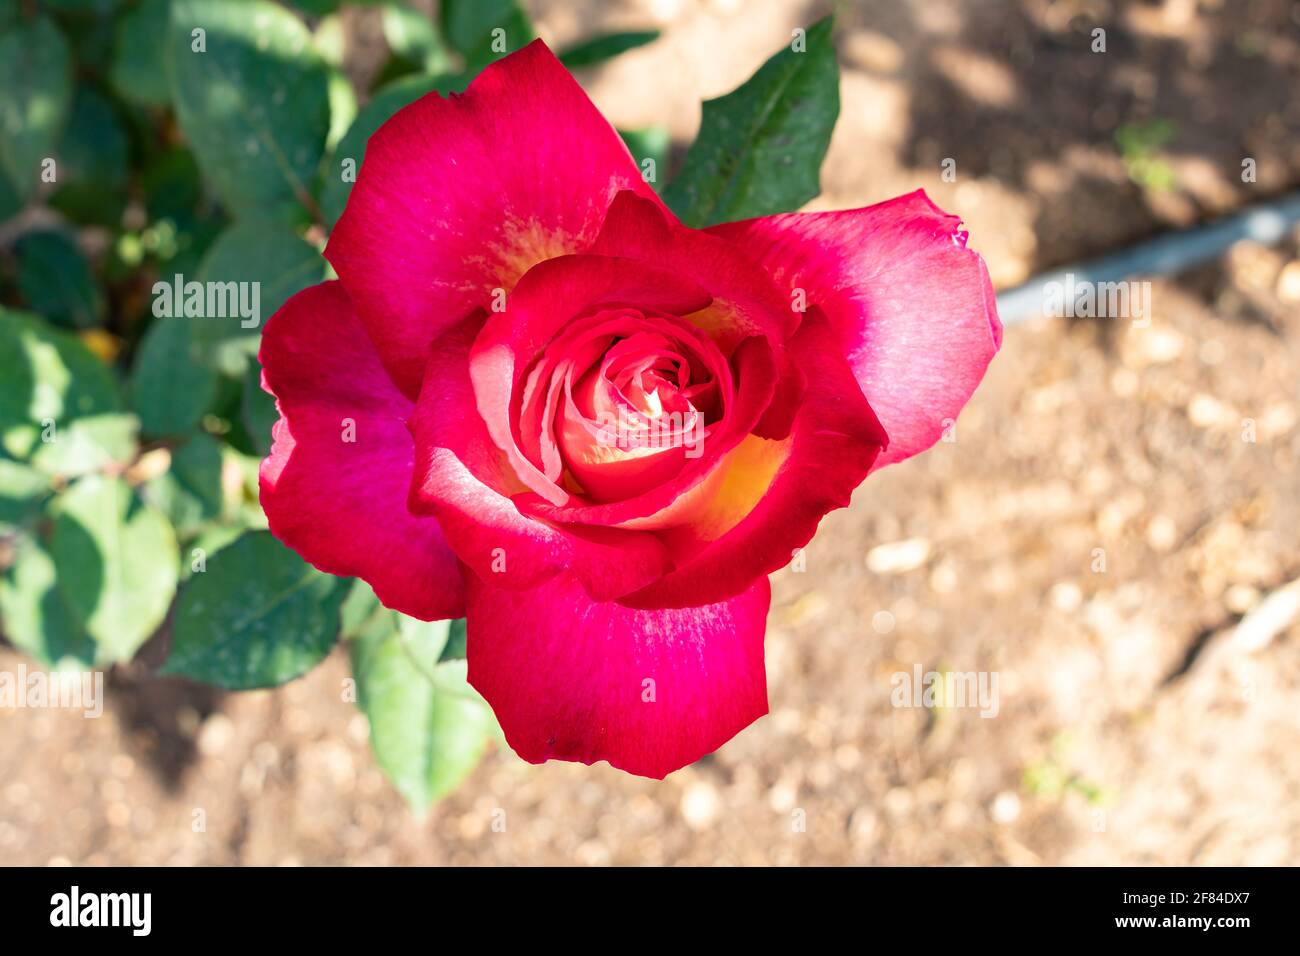 Rote Rose. Die Rosa-Gattung besteht aus einer bekannten Gruppe von meist dornigen und blumigen Sträuchern, den wichtigsten Vertretern der Familie der Rosaceae.die Stockfoto